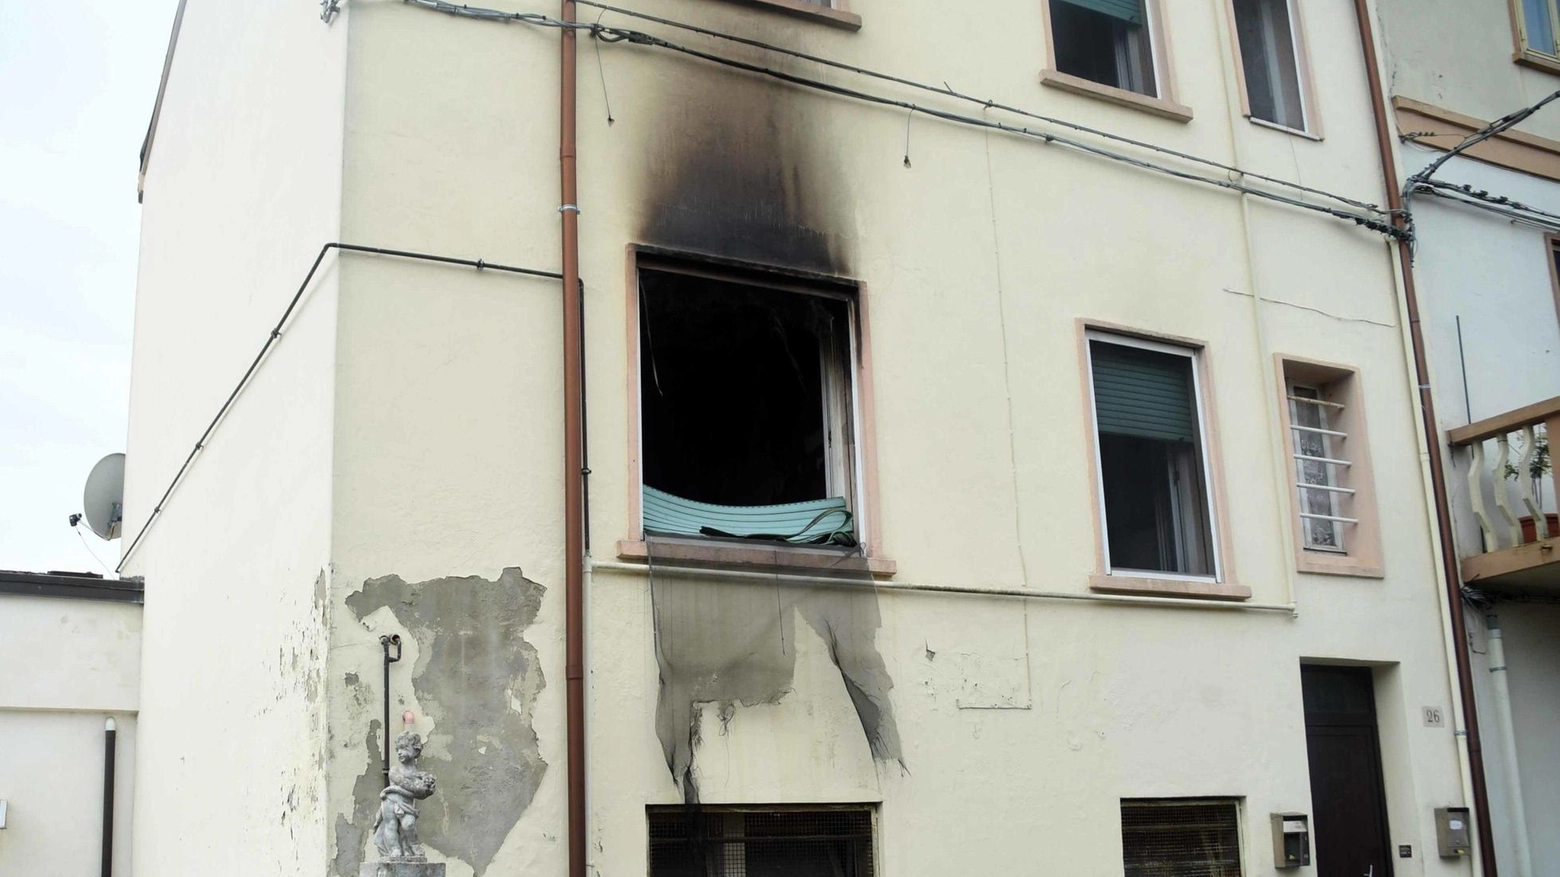 Due incendi in poche ore. Brucia un appartamento, paura e famiglie sfollate